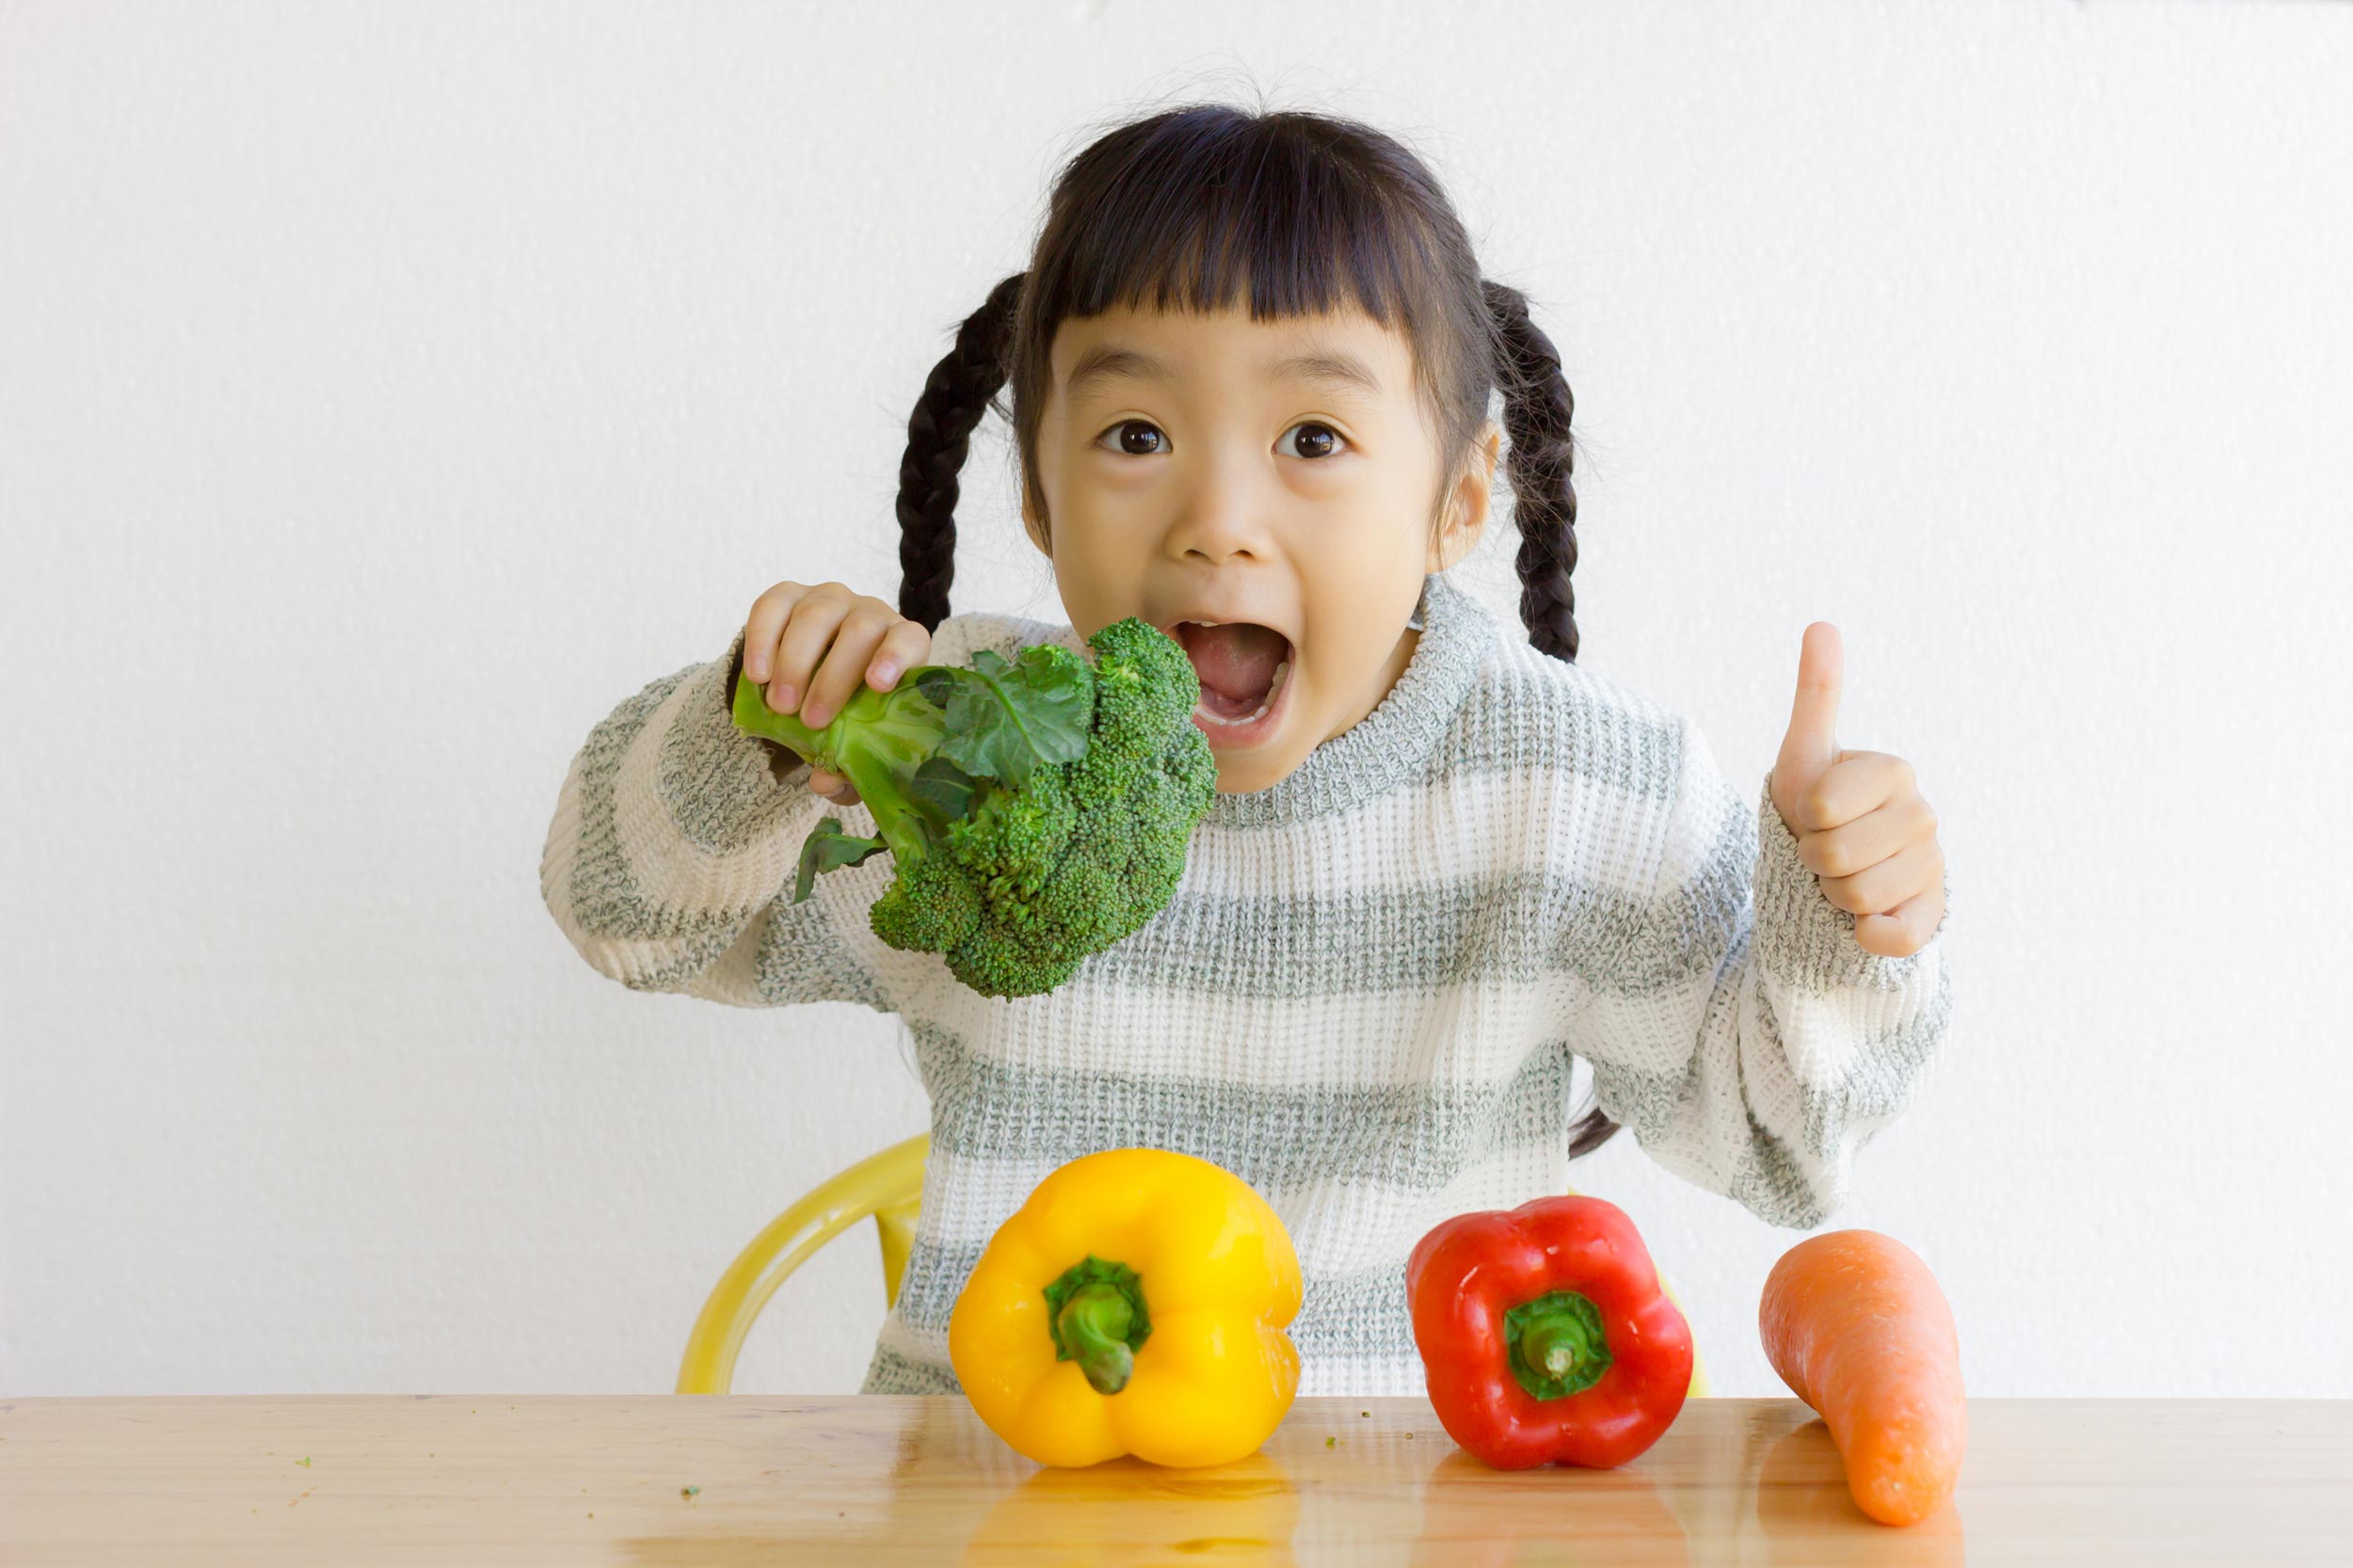 Dibutuhkan kesabaran dan proses hingga anak mau makan sayur